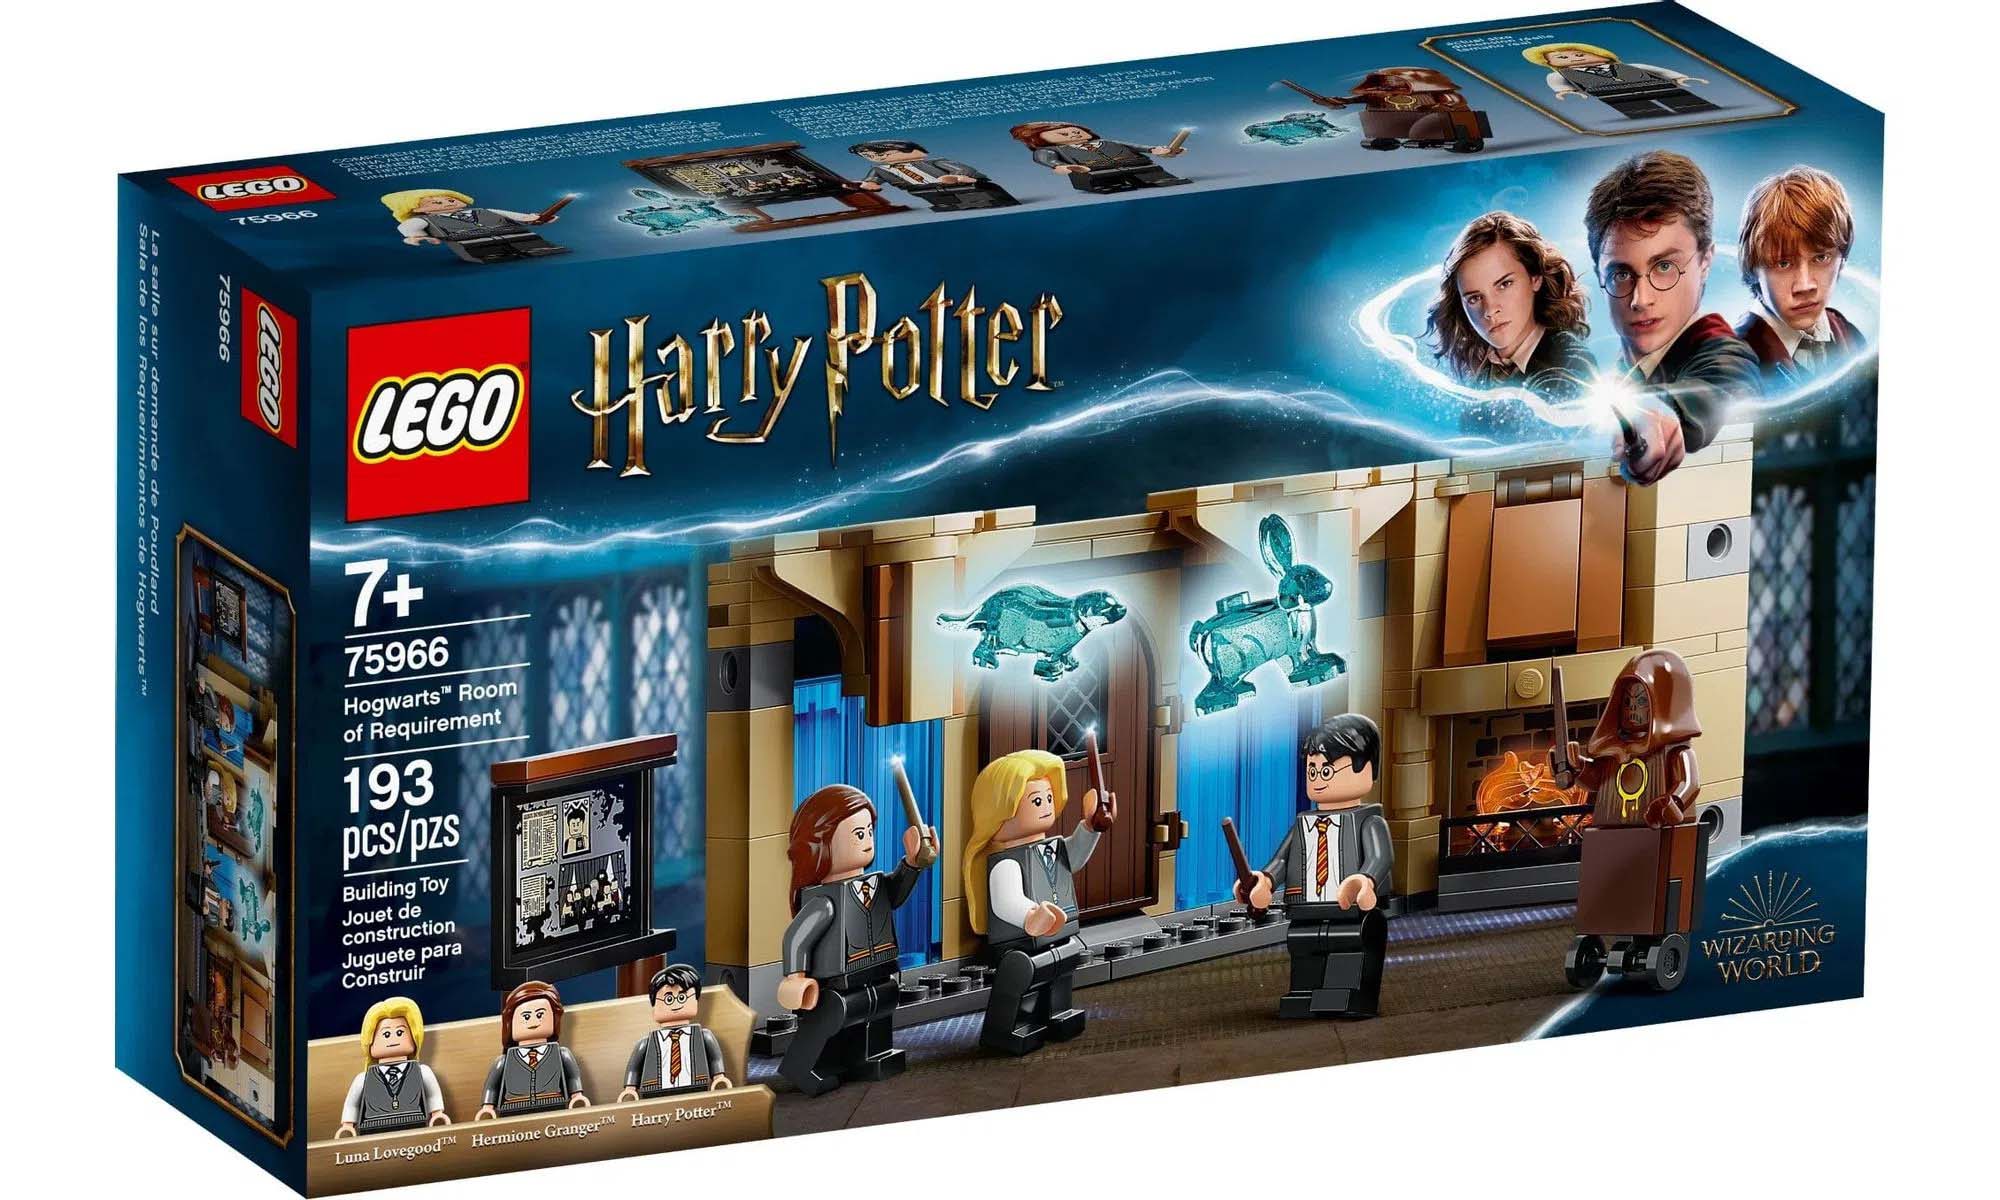 LEGO Harry Potter™ Sala Precisa de Hogwarts 75966